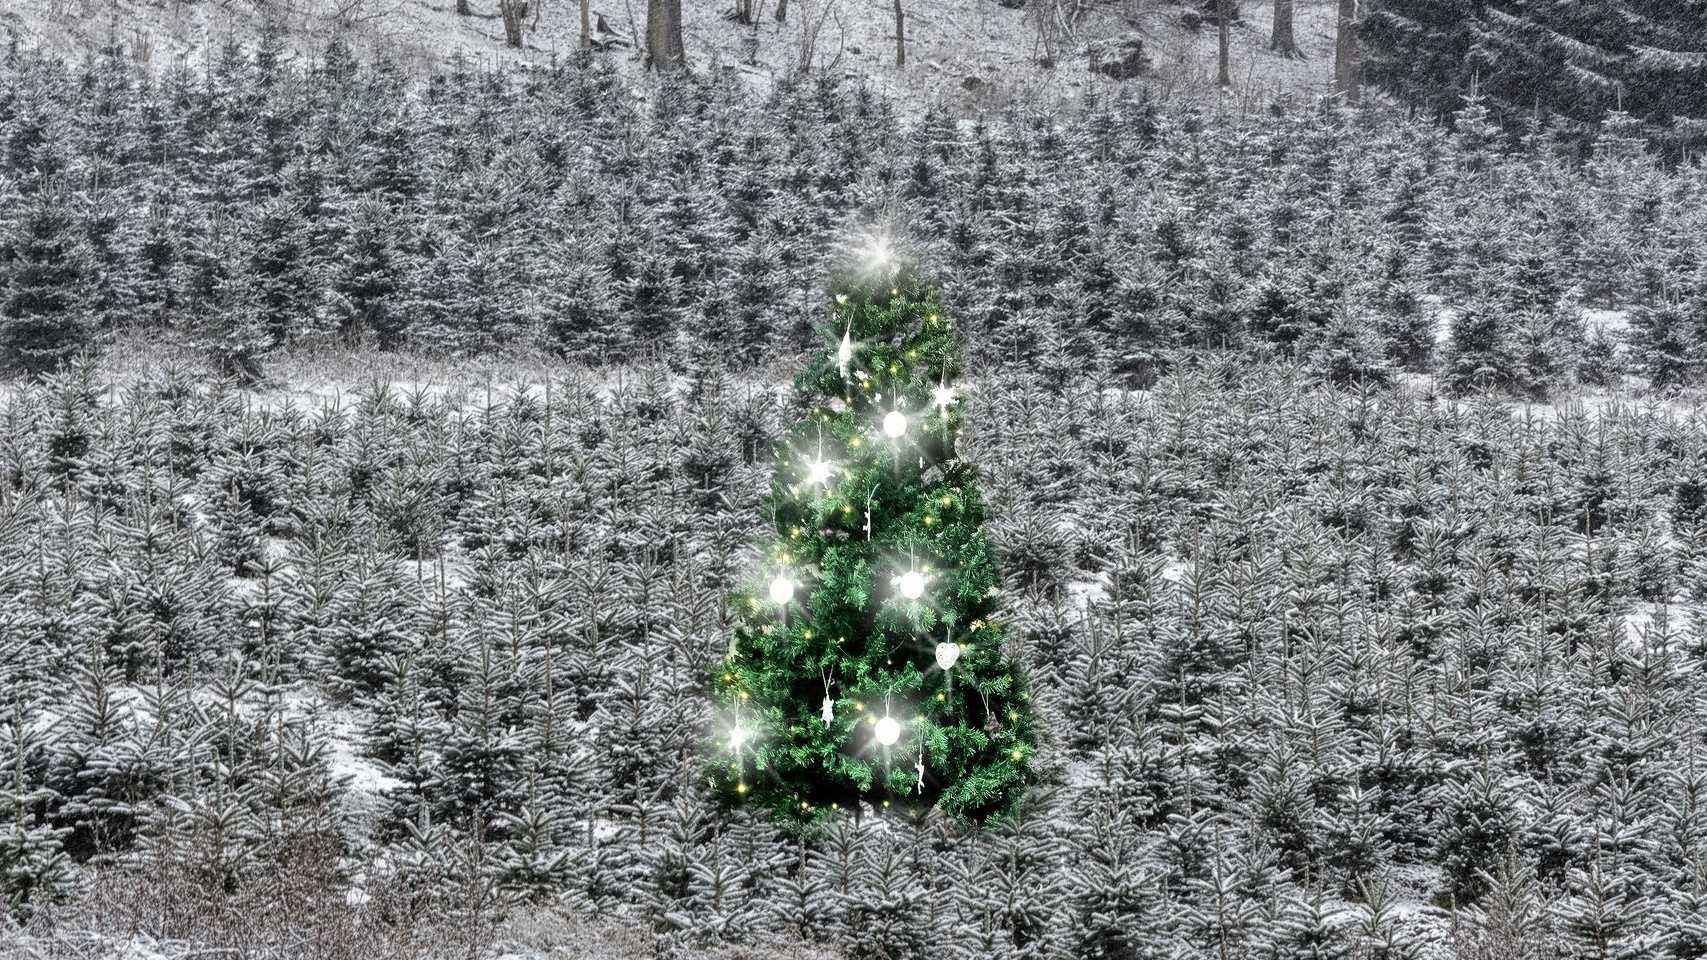 Picnic bezorgt kerstbomen in Duitsland 